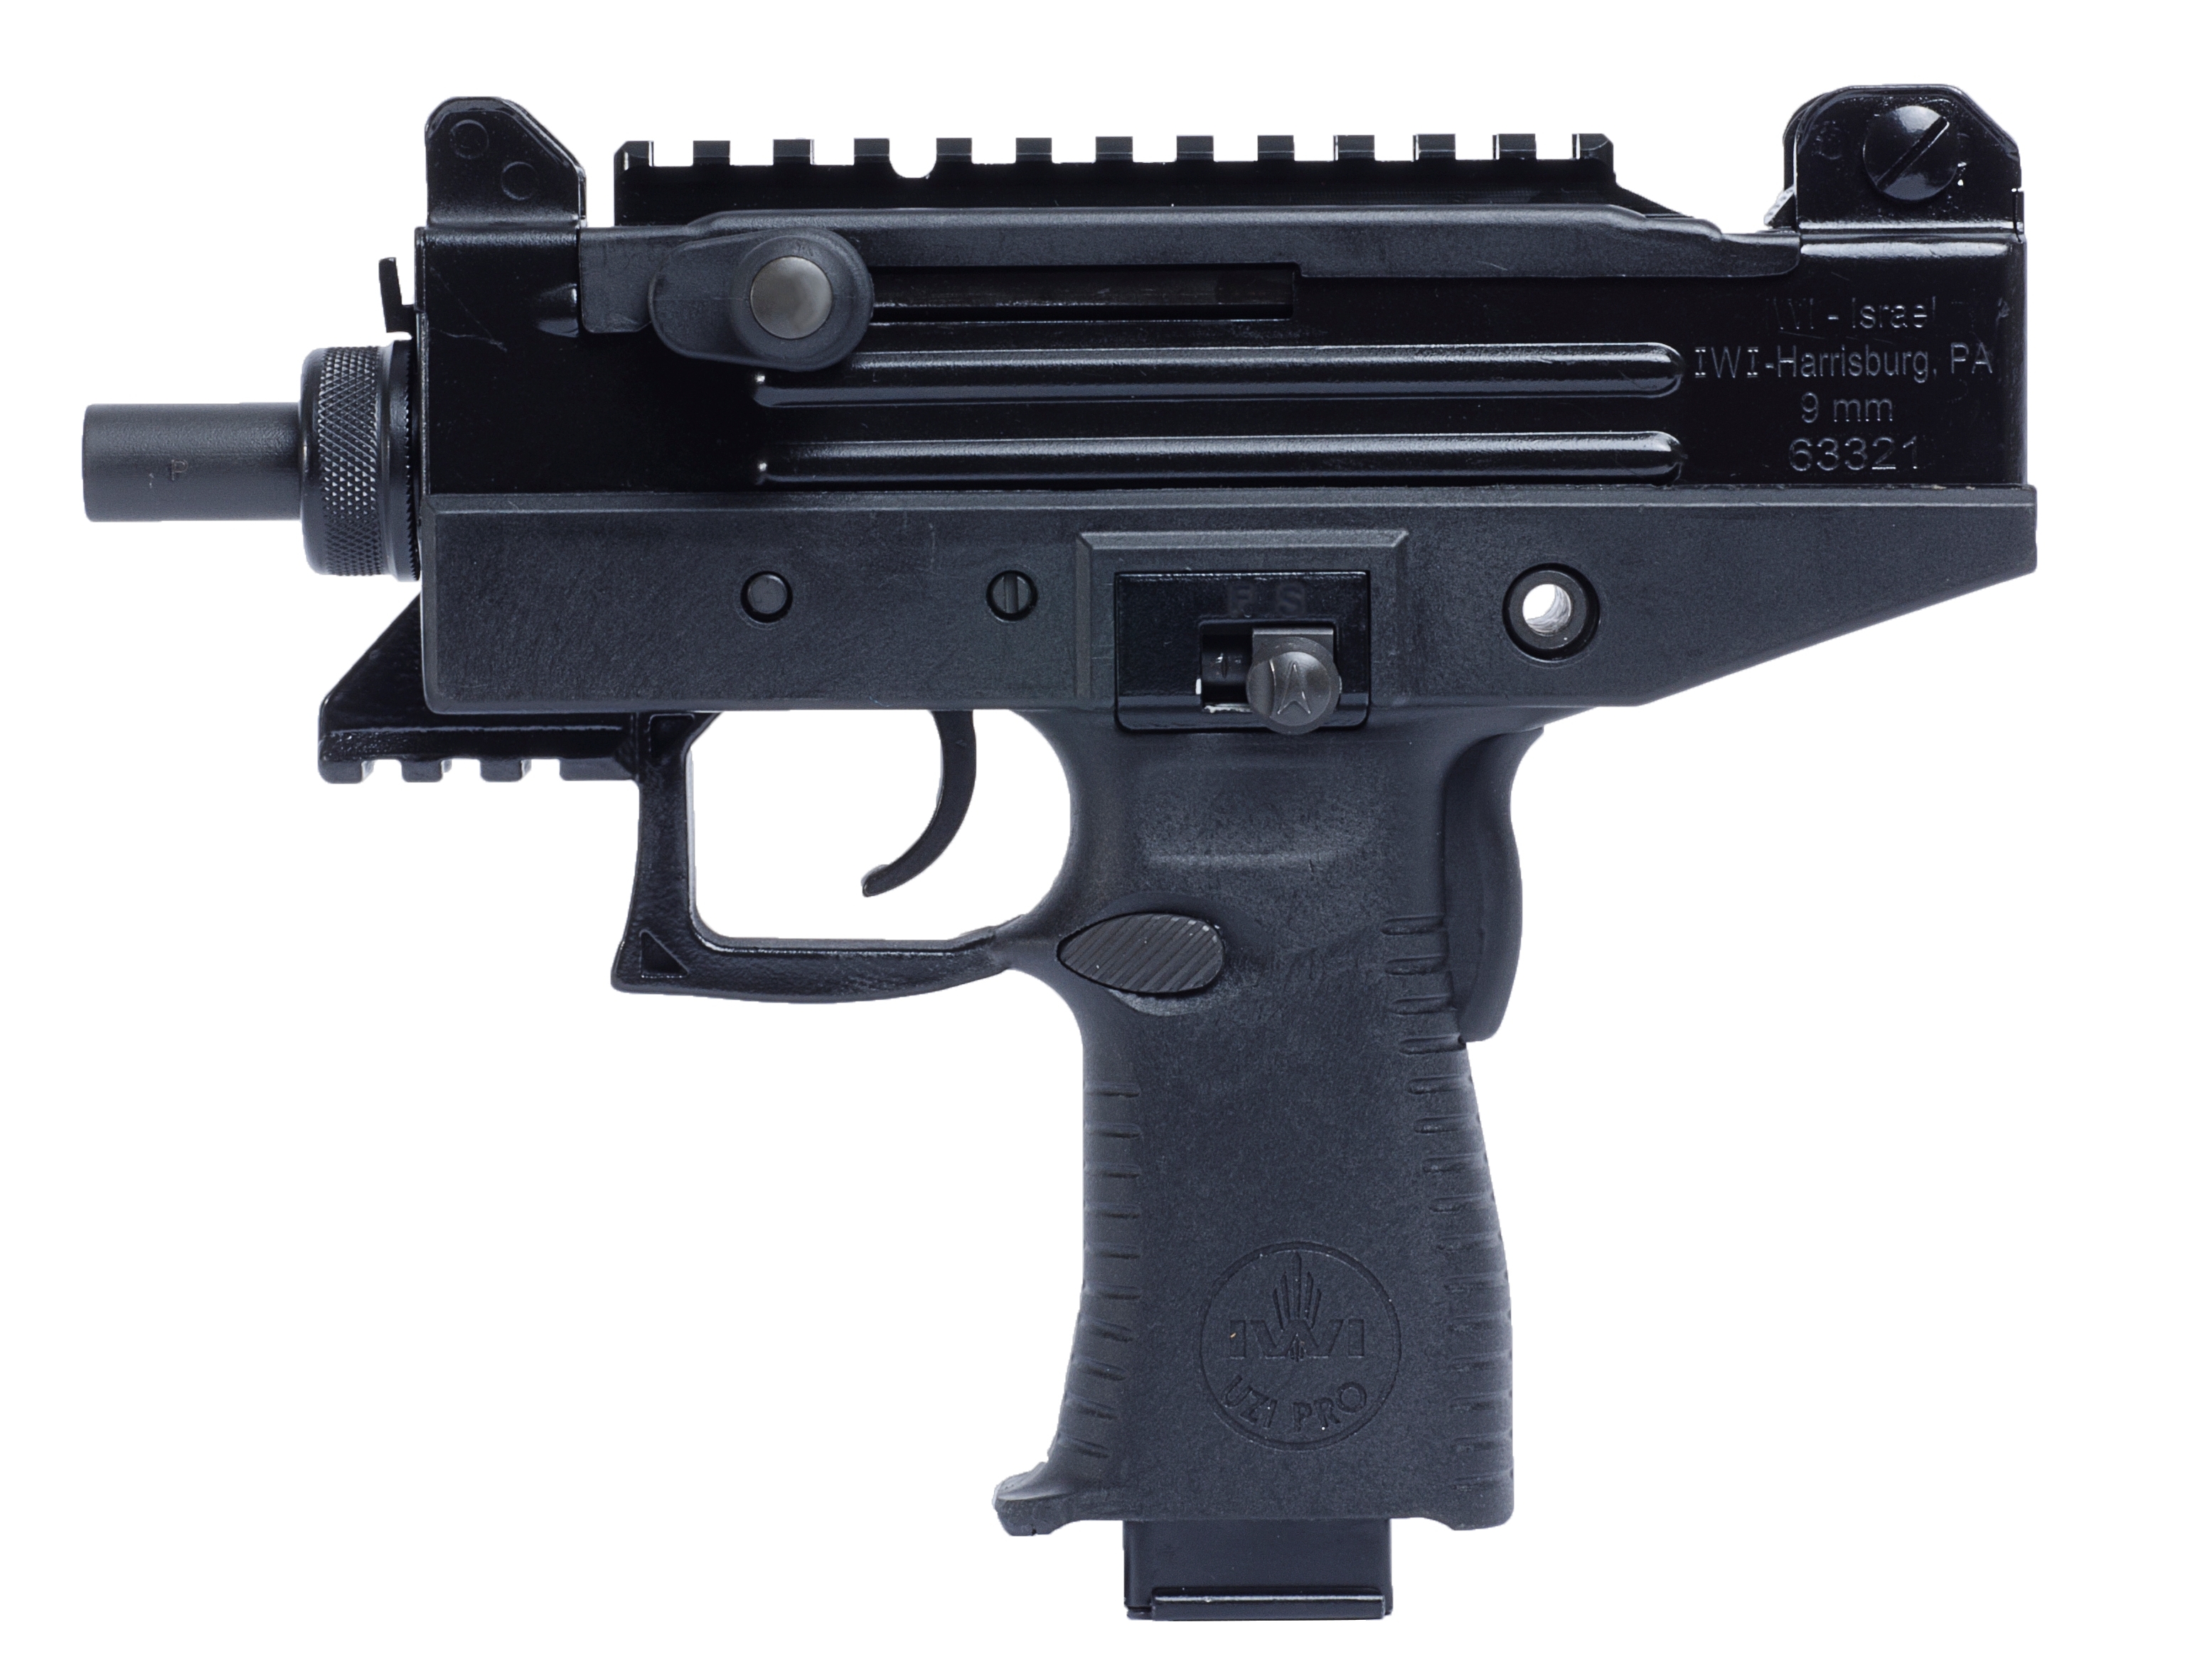 Скачать обои бесплатно Оружие, Пистолет Пулемет Uzi Pro Sub картинка на рабочий стол ПК